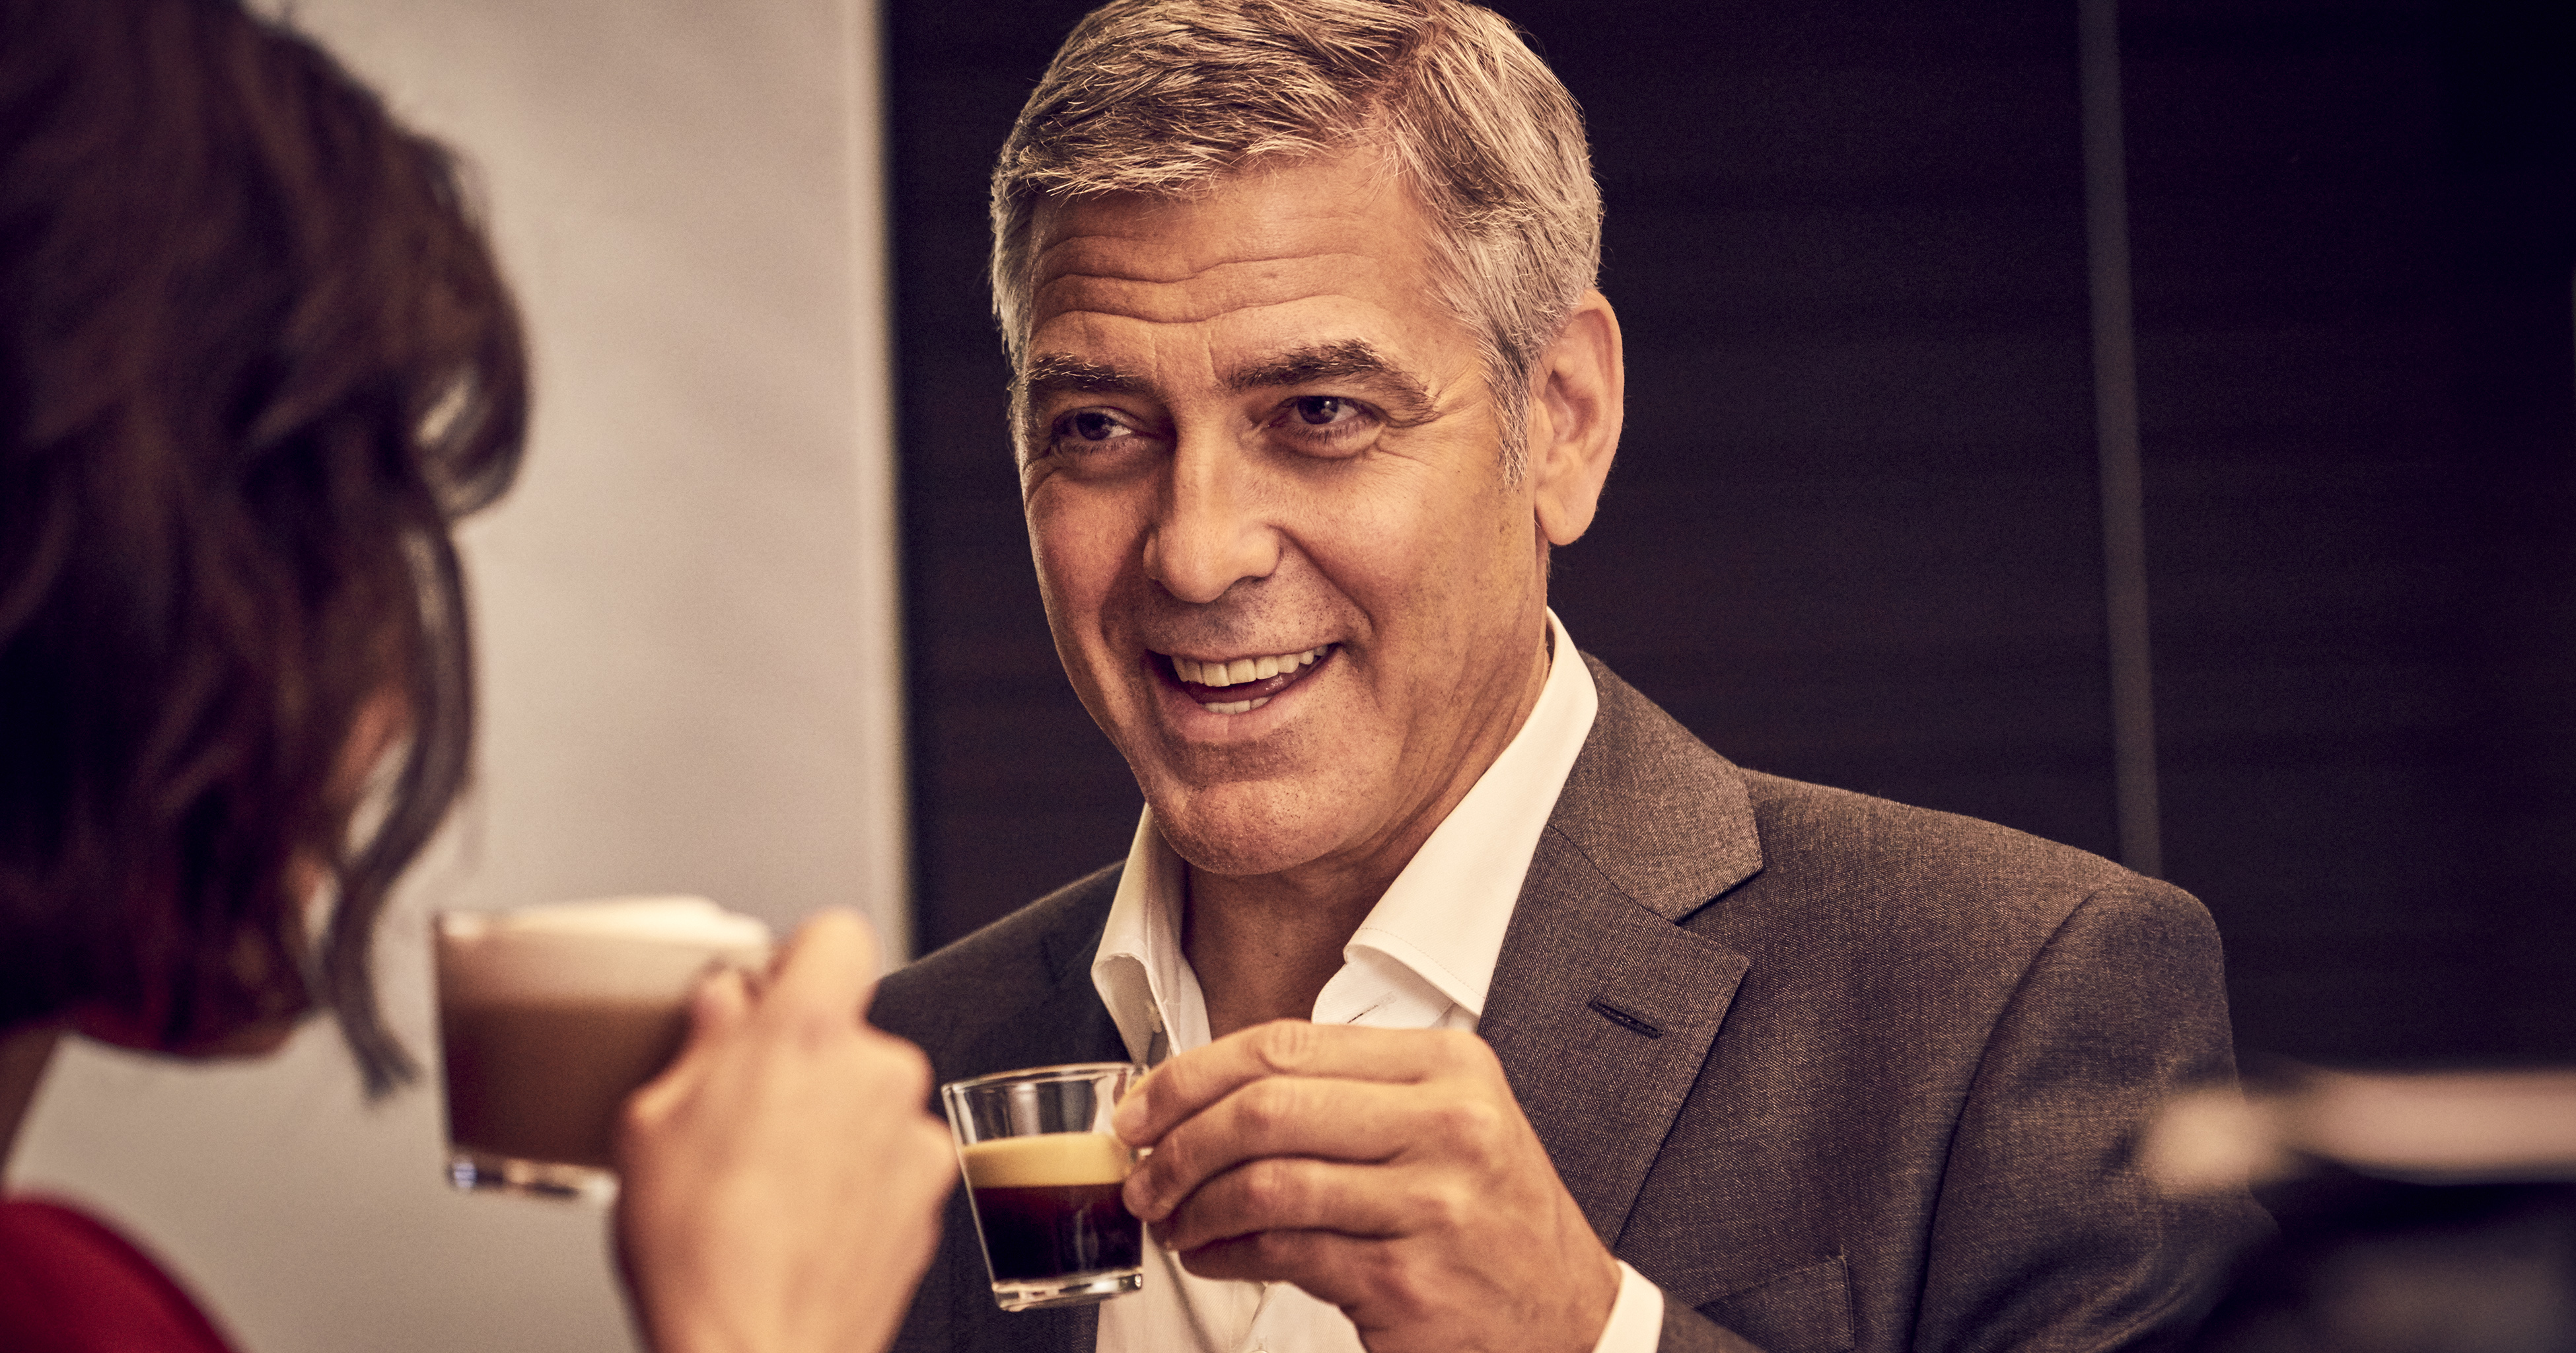 Известные рекламные ролики. Джордж Клуни неспрессо. Джордж Клуни кофе. Джордж Клуни реклама кофе. Реклама неспрессо с Джорджем Клуни.